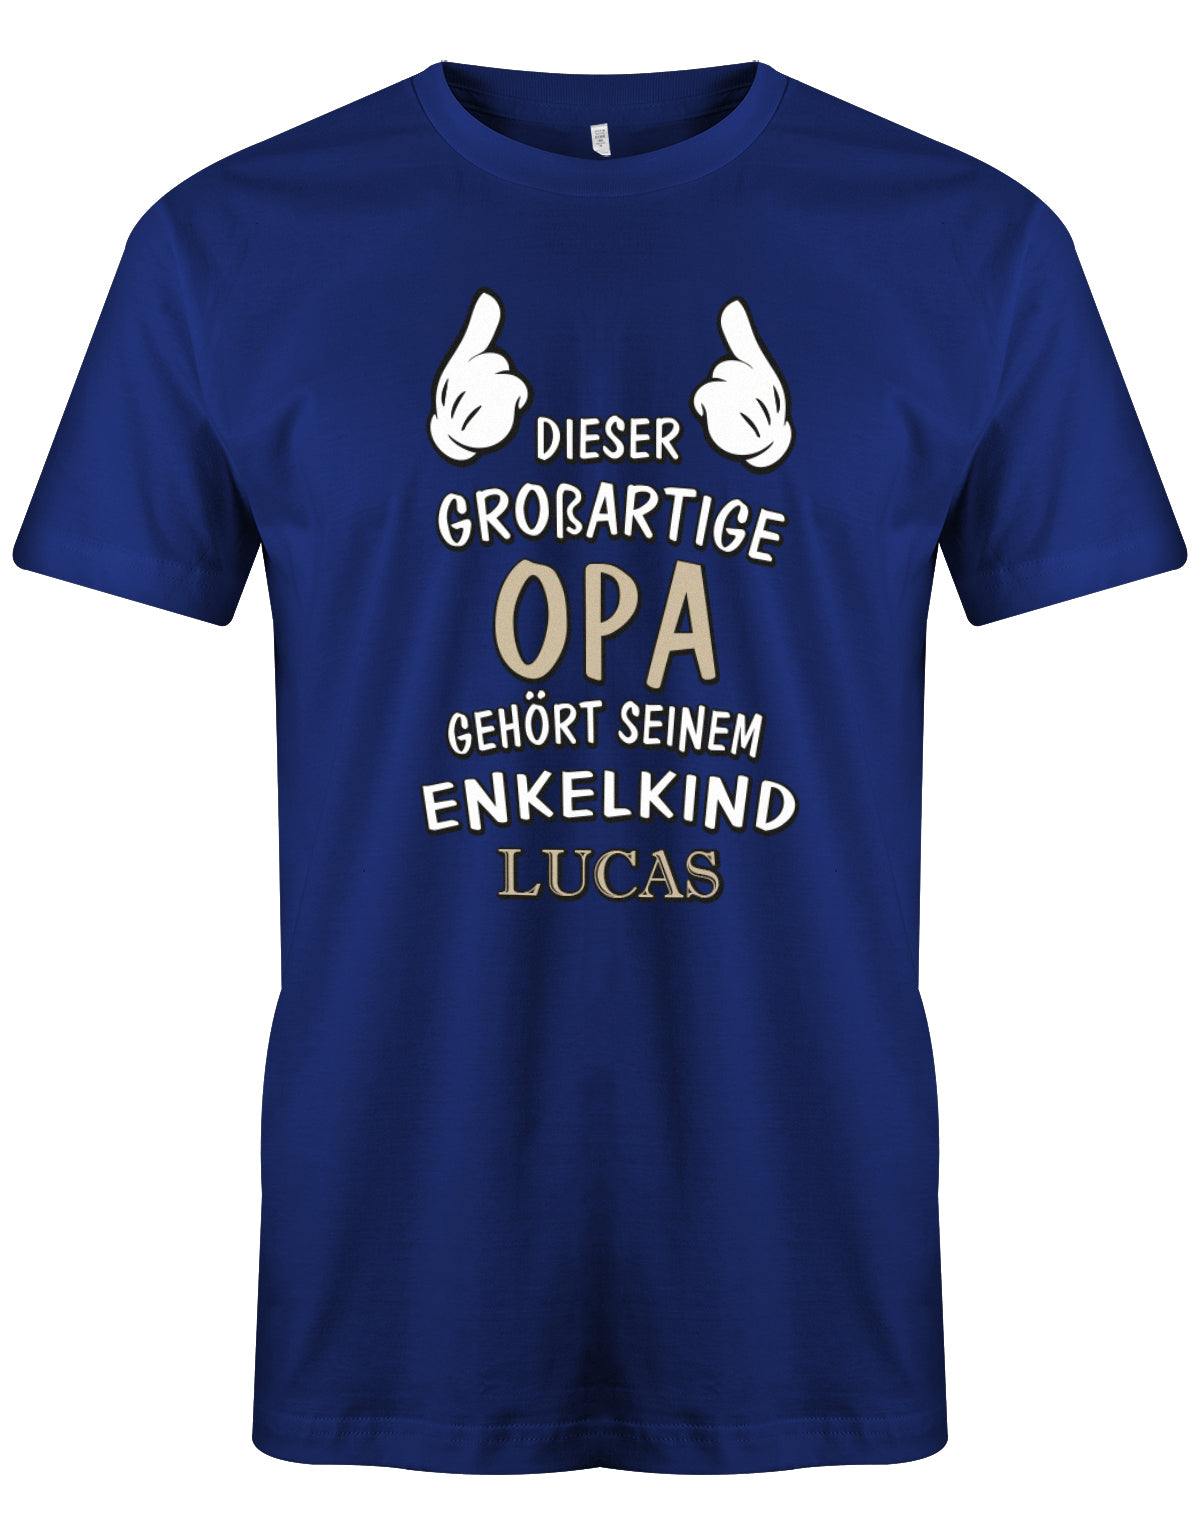 Opa Shirt personalisiert - Dieser großartige Opa gehört seinen Enkelkind. Mit Namen vom Enkelkind. Royalblau